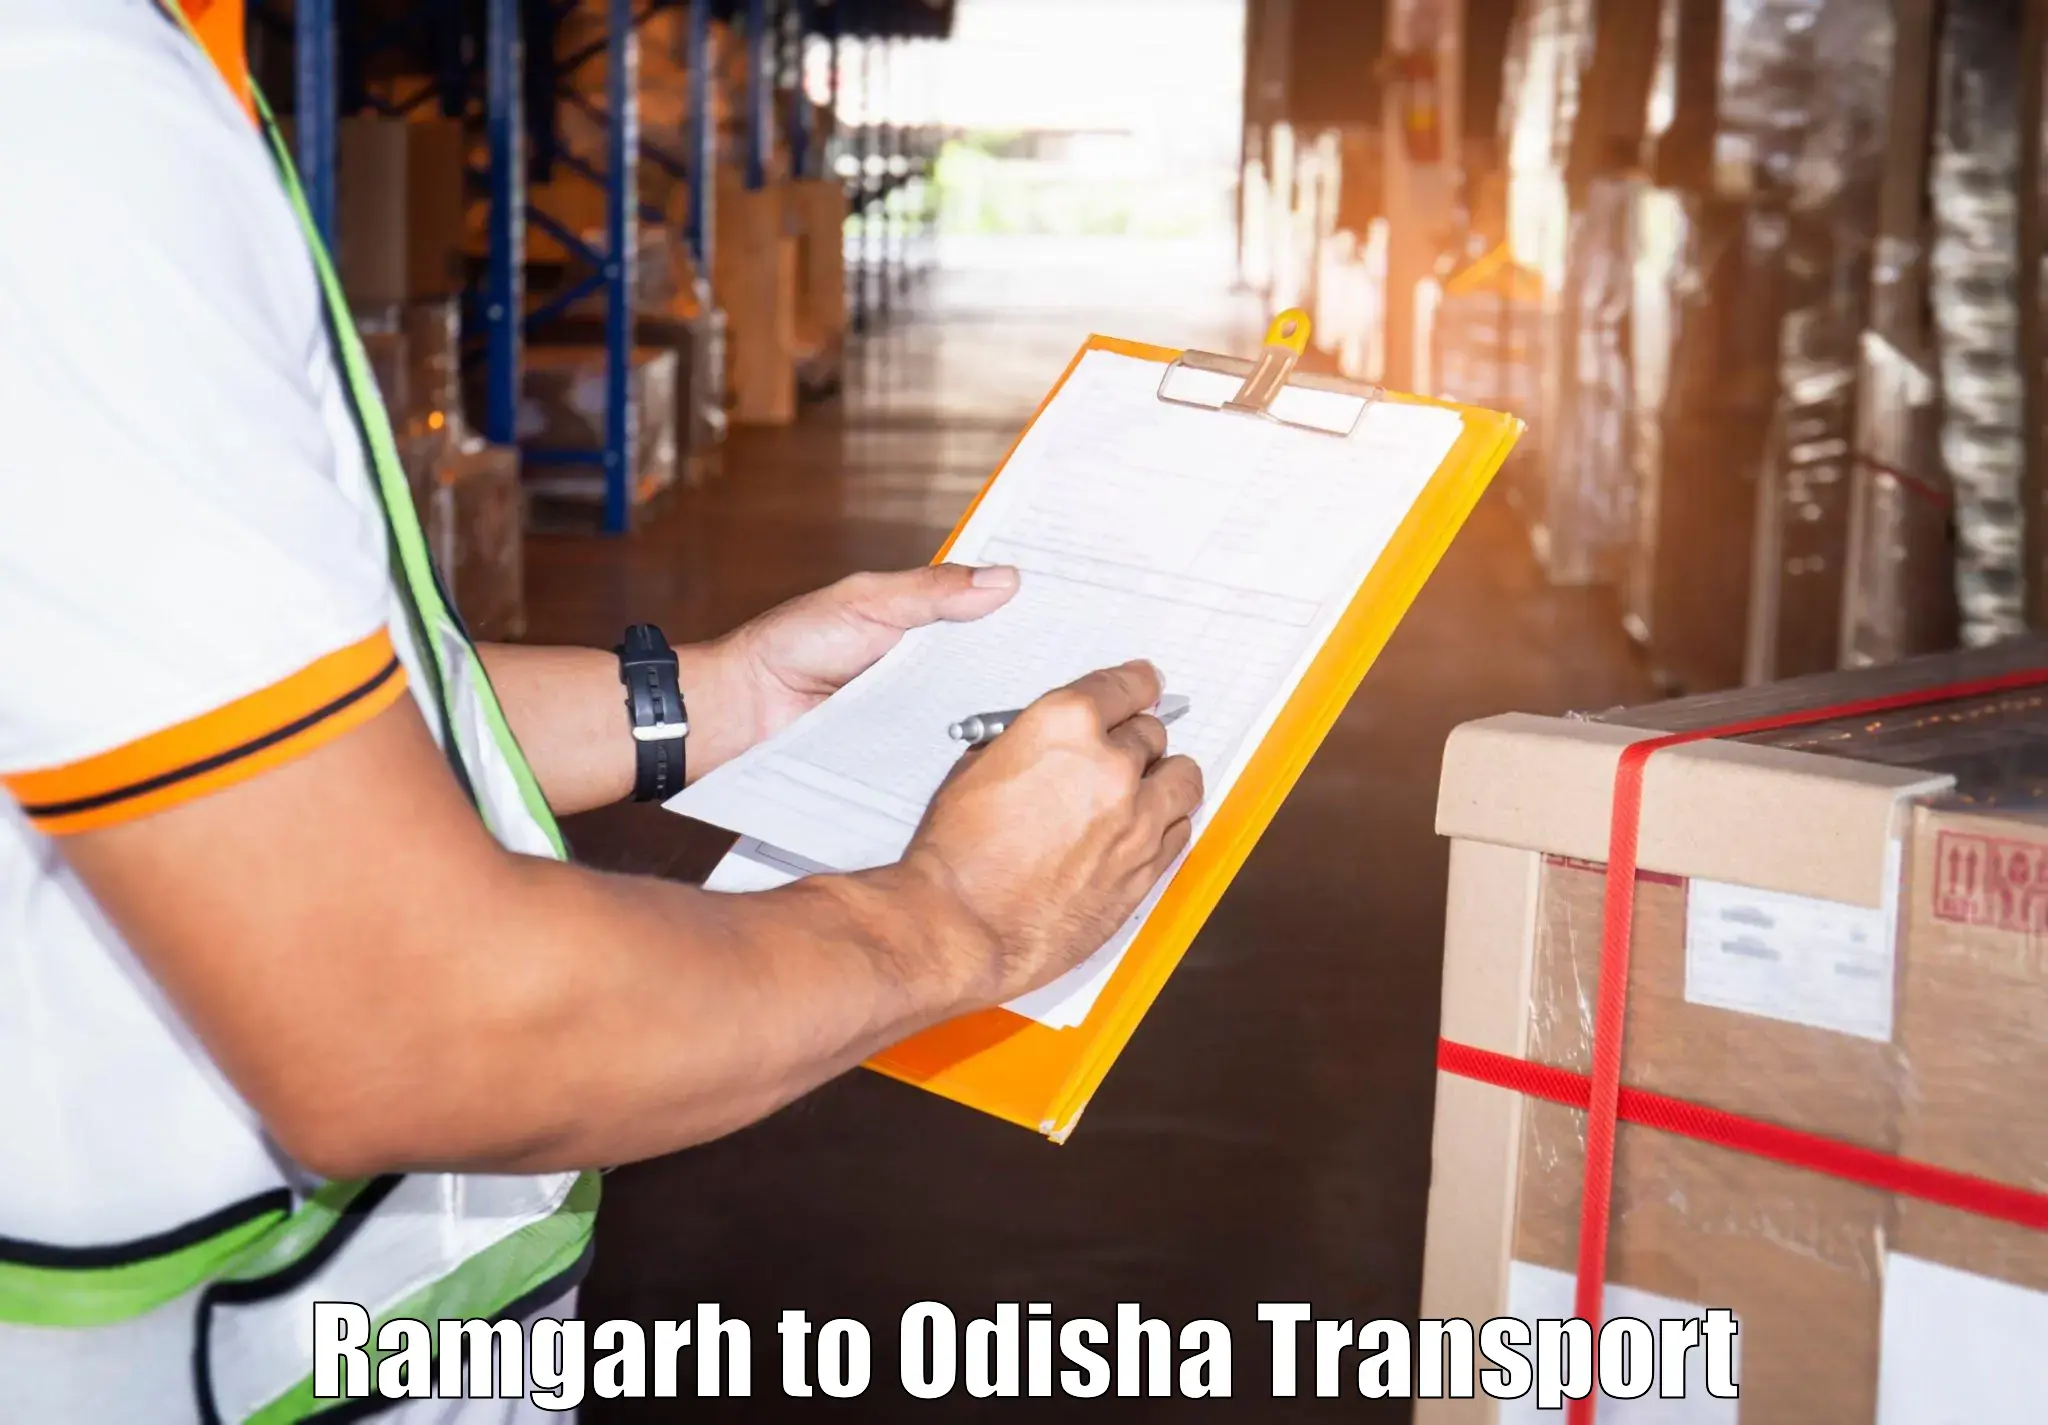 Daily transport service Ramgarh to Paikana